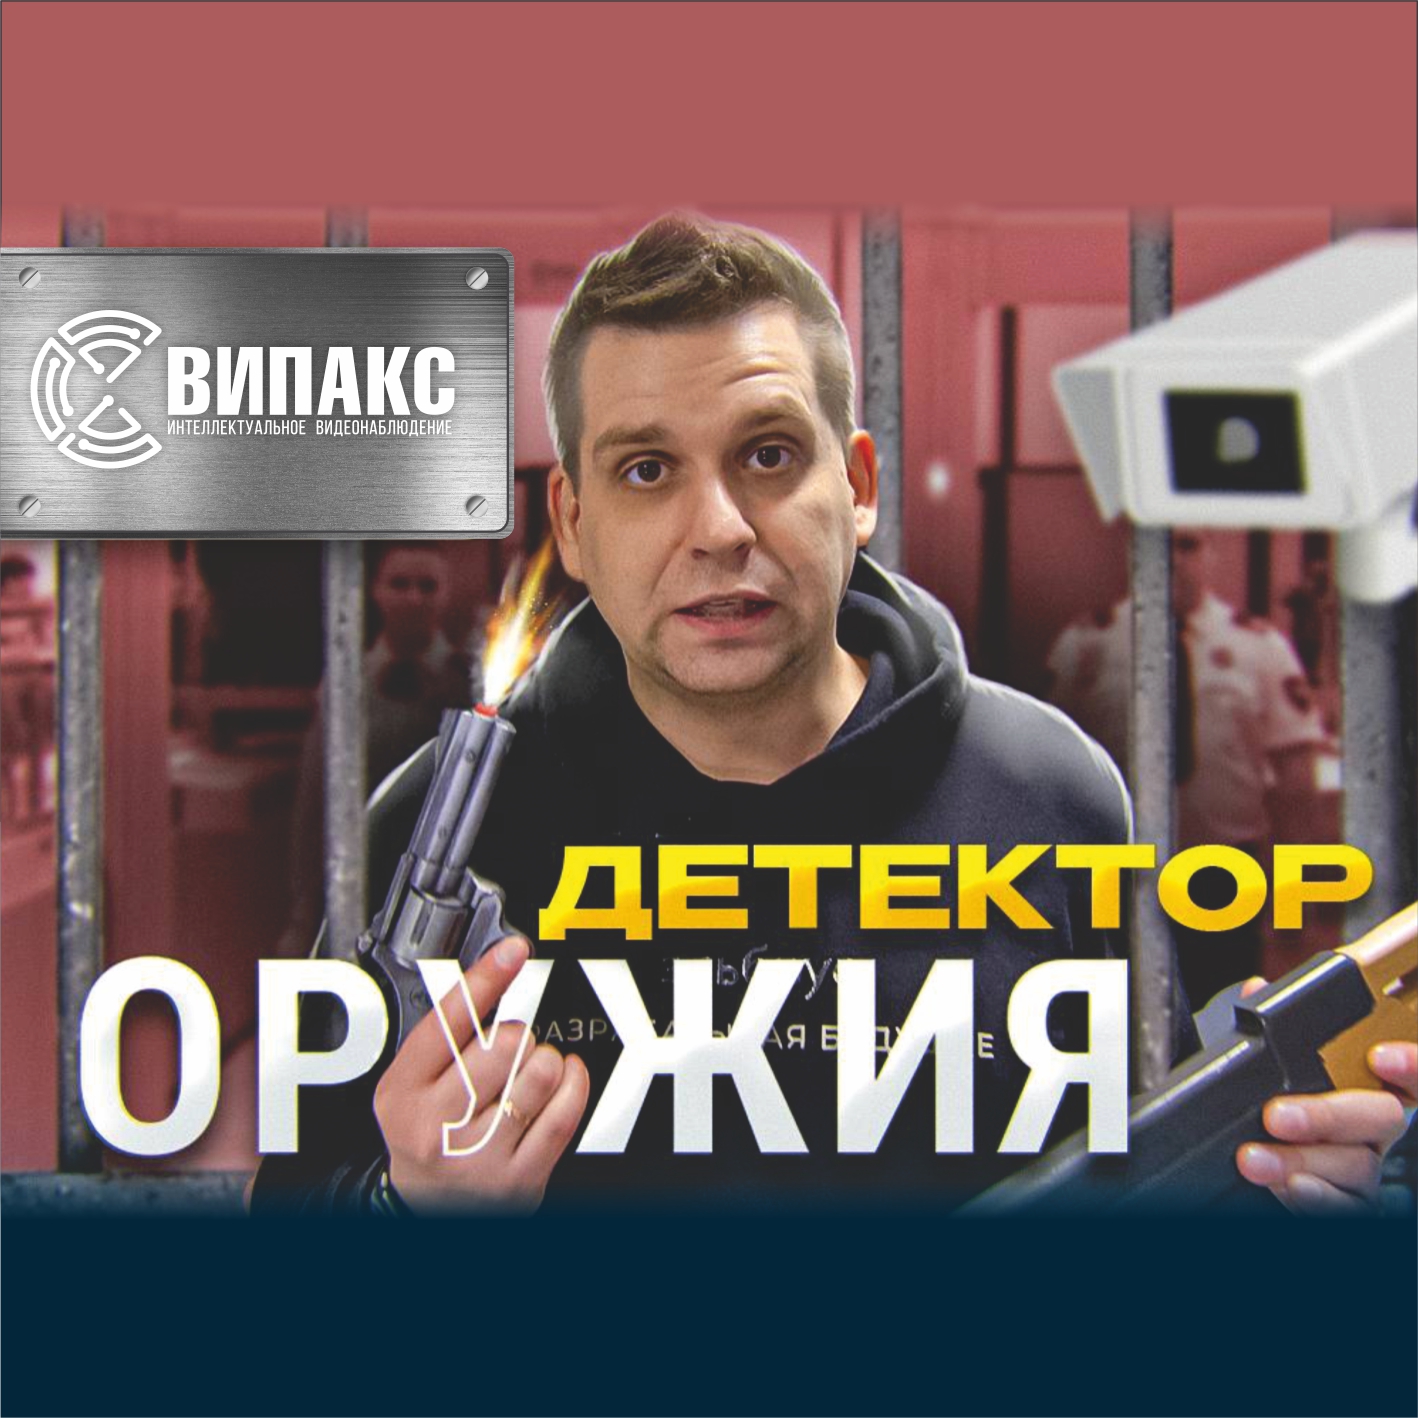 Максим Горшенин о компании "ВИПАКС", разработках и искусственном интеллекте